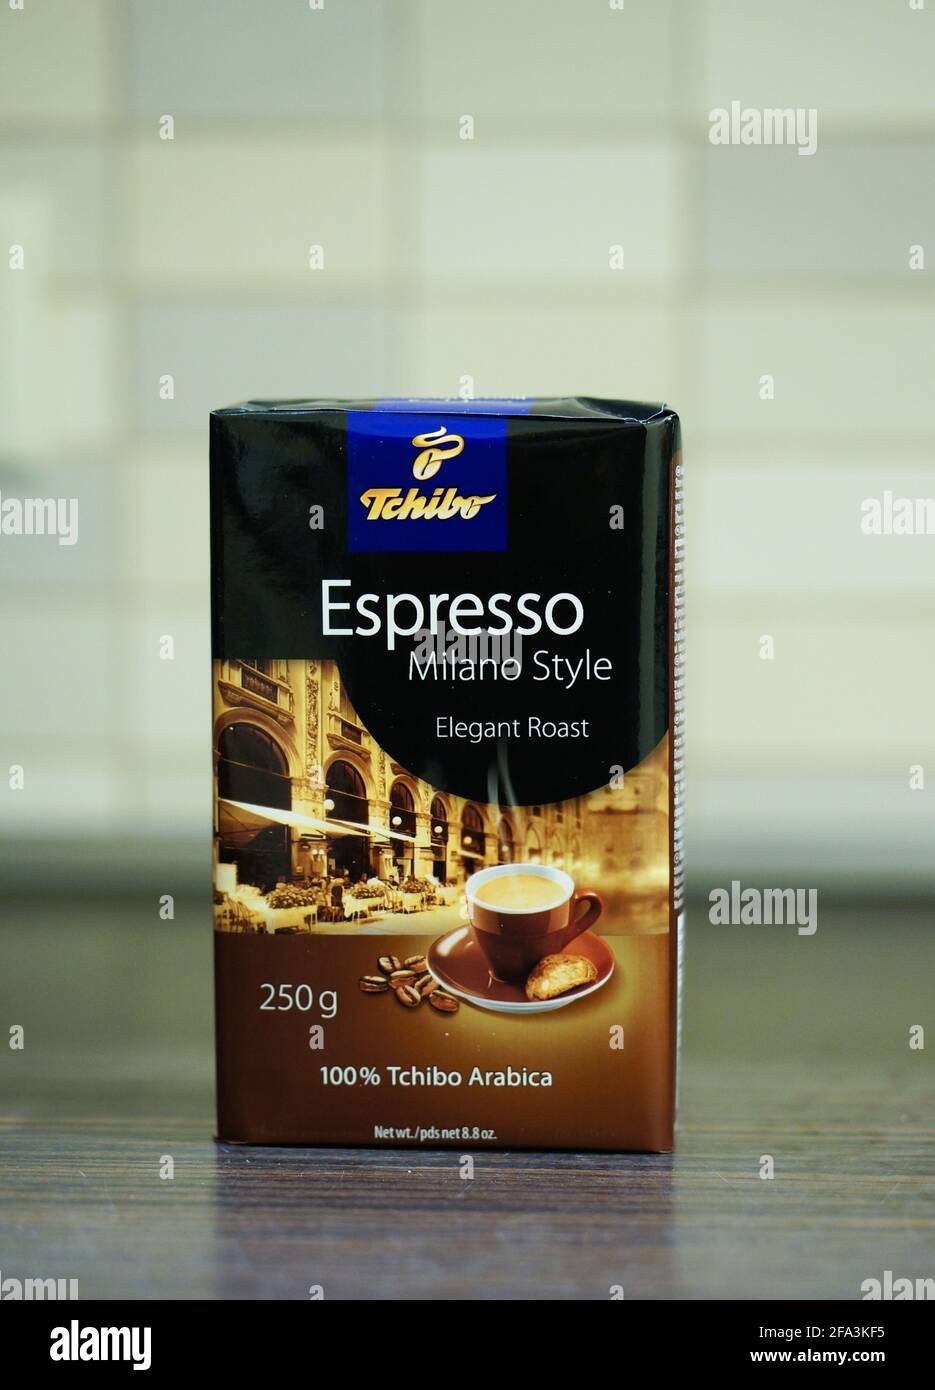 POZNAN, POLEN - 30. Dez 2015: Packung Tschibo Espresso Kaffee im Milano  Style Stockfotografie - Alamy